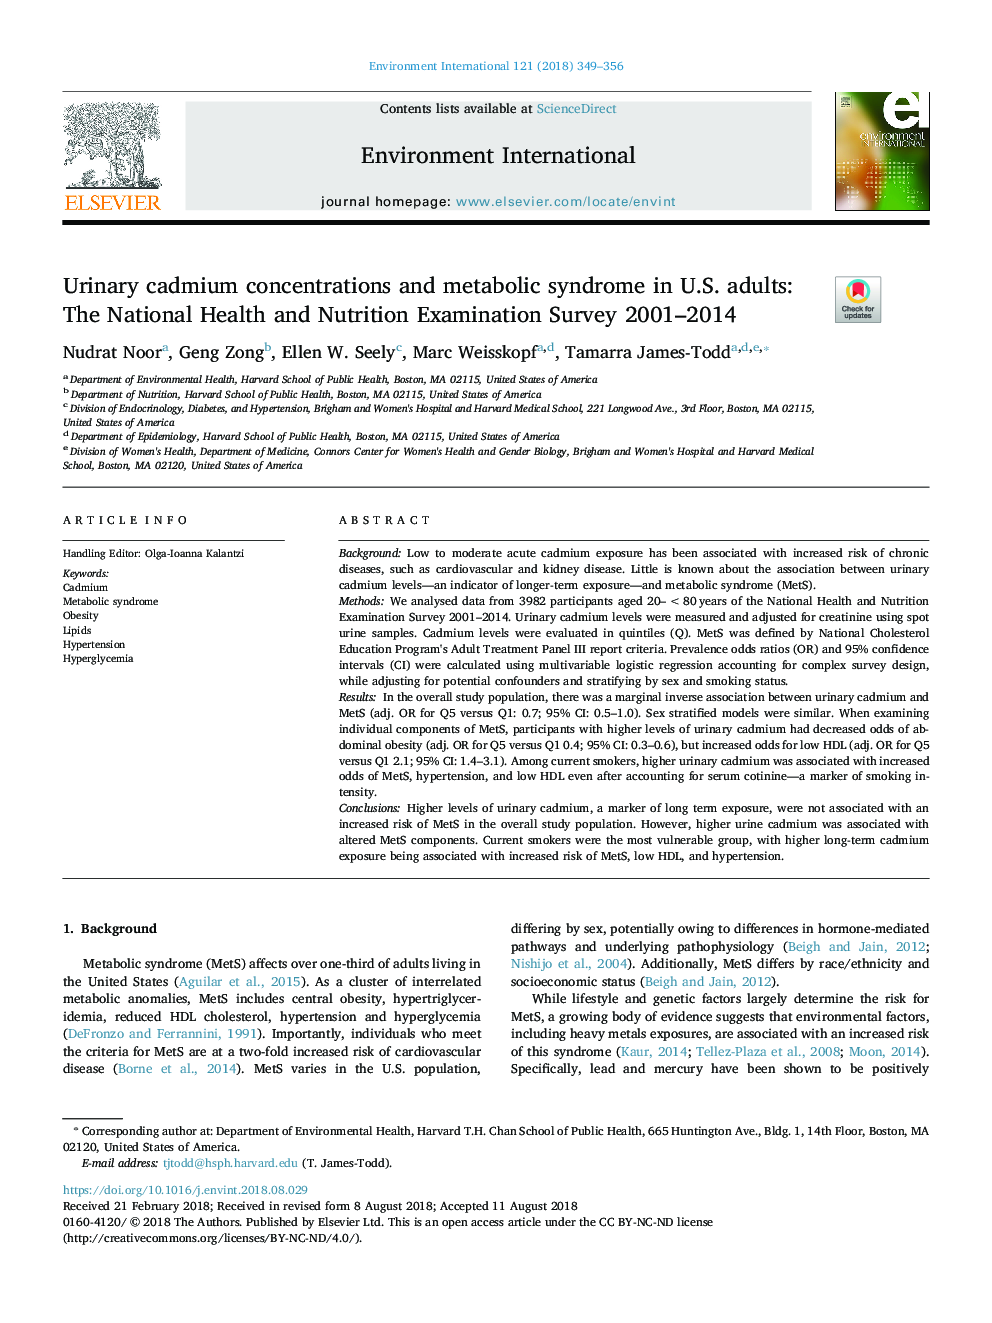 غلظت کادمیوم ادرار و سندرم متابولیک در بزرگسالان ایالات متحده: بررسی ملی بهداشت و تغذیه سال های 2001-2014